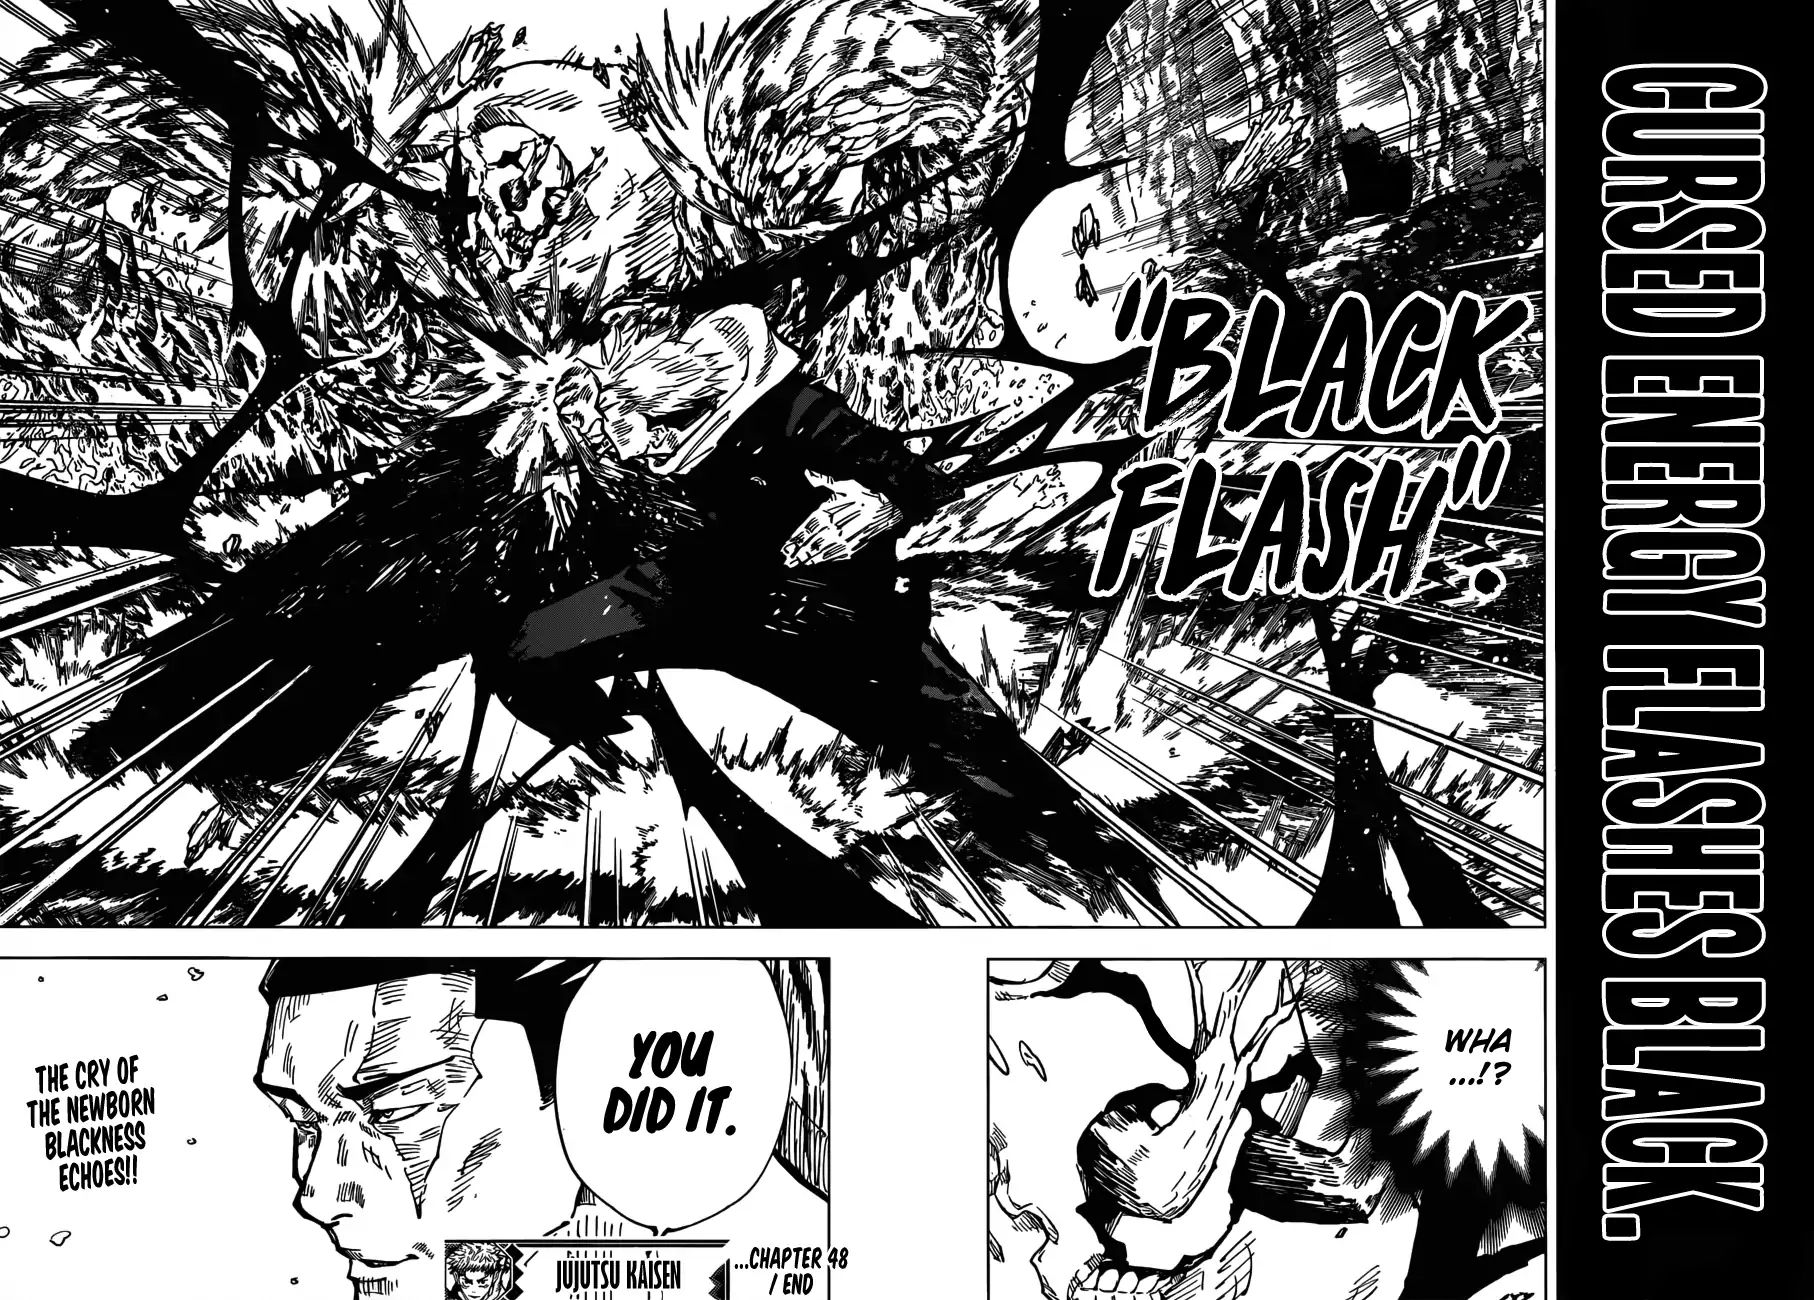 Jujutsu Kaisen, Chapter 48 Black Flash image 18